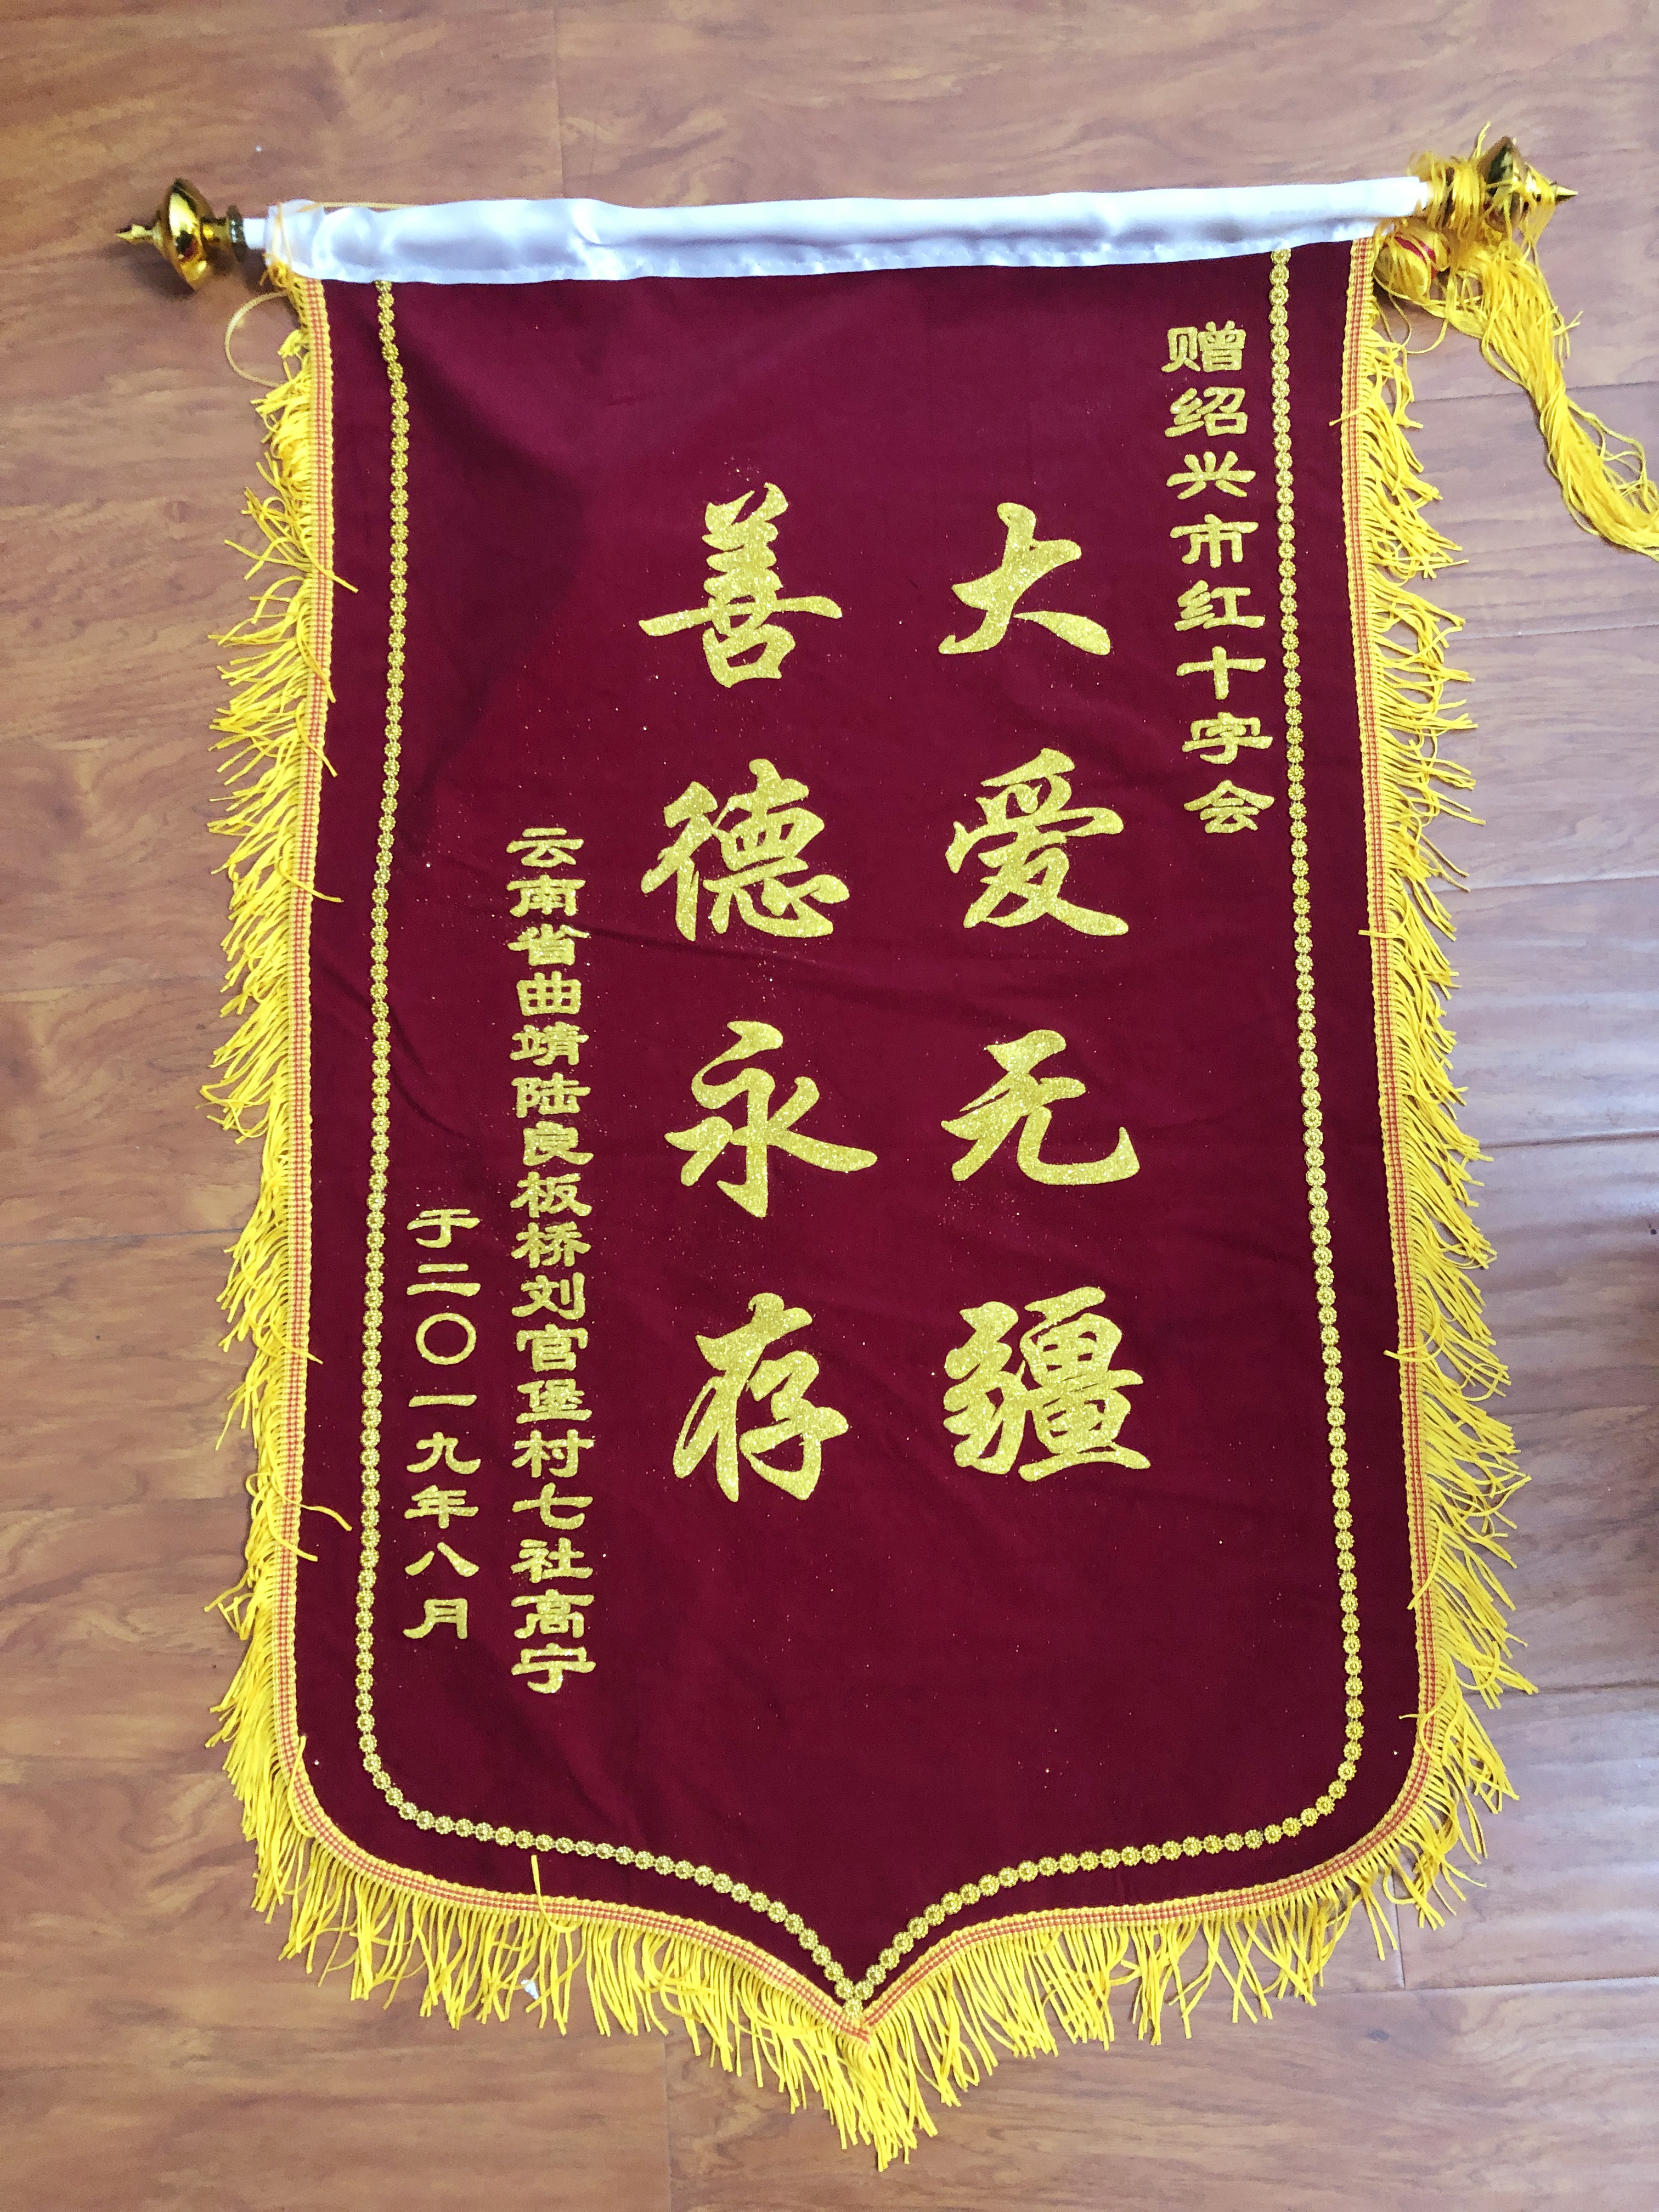 北京市总工会向北京市律师协会赠送锦旗